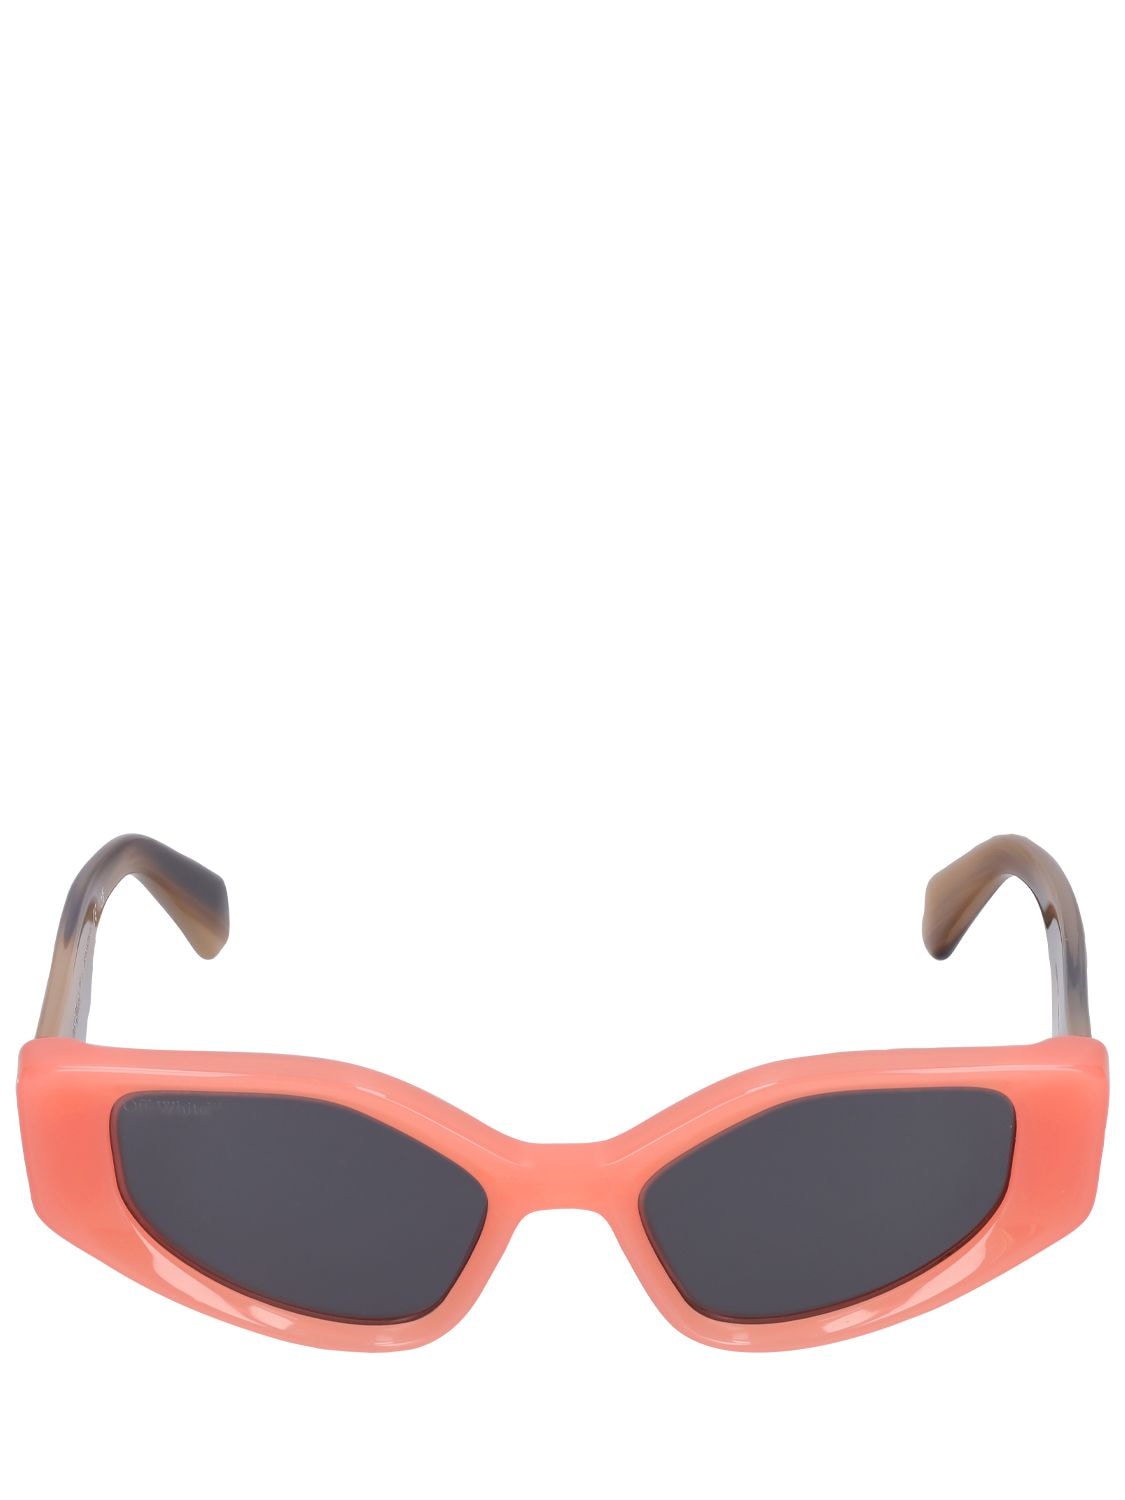 Memphis Cat-eye Acetate Sunglasses